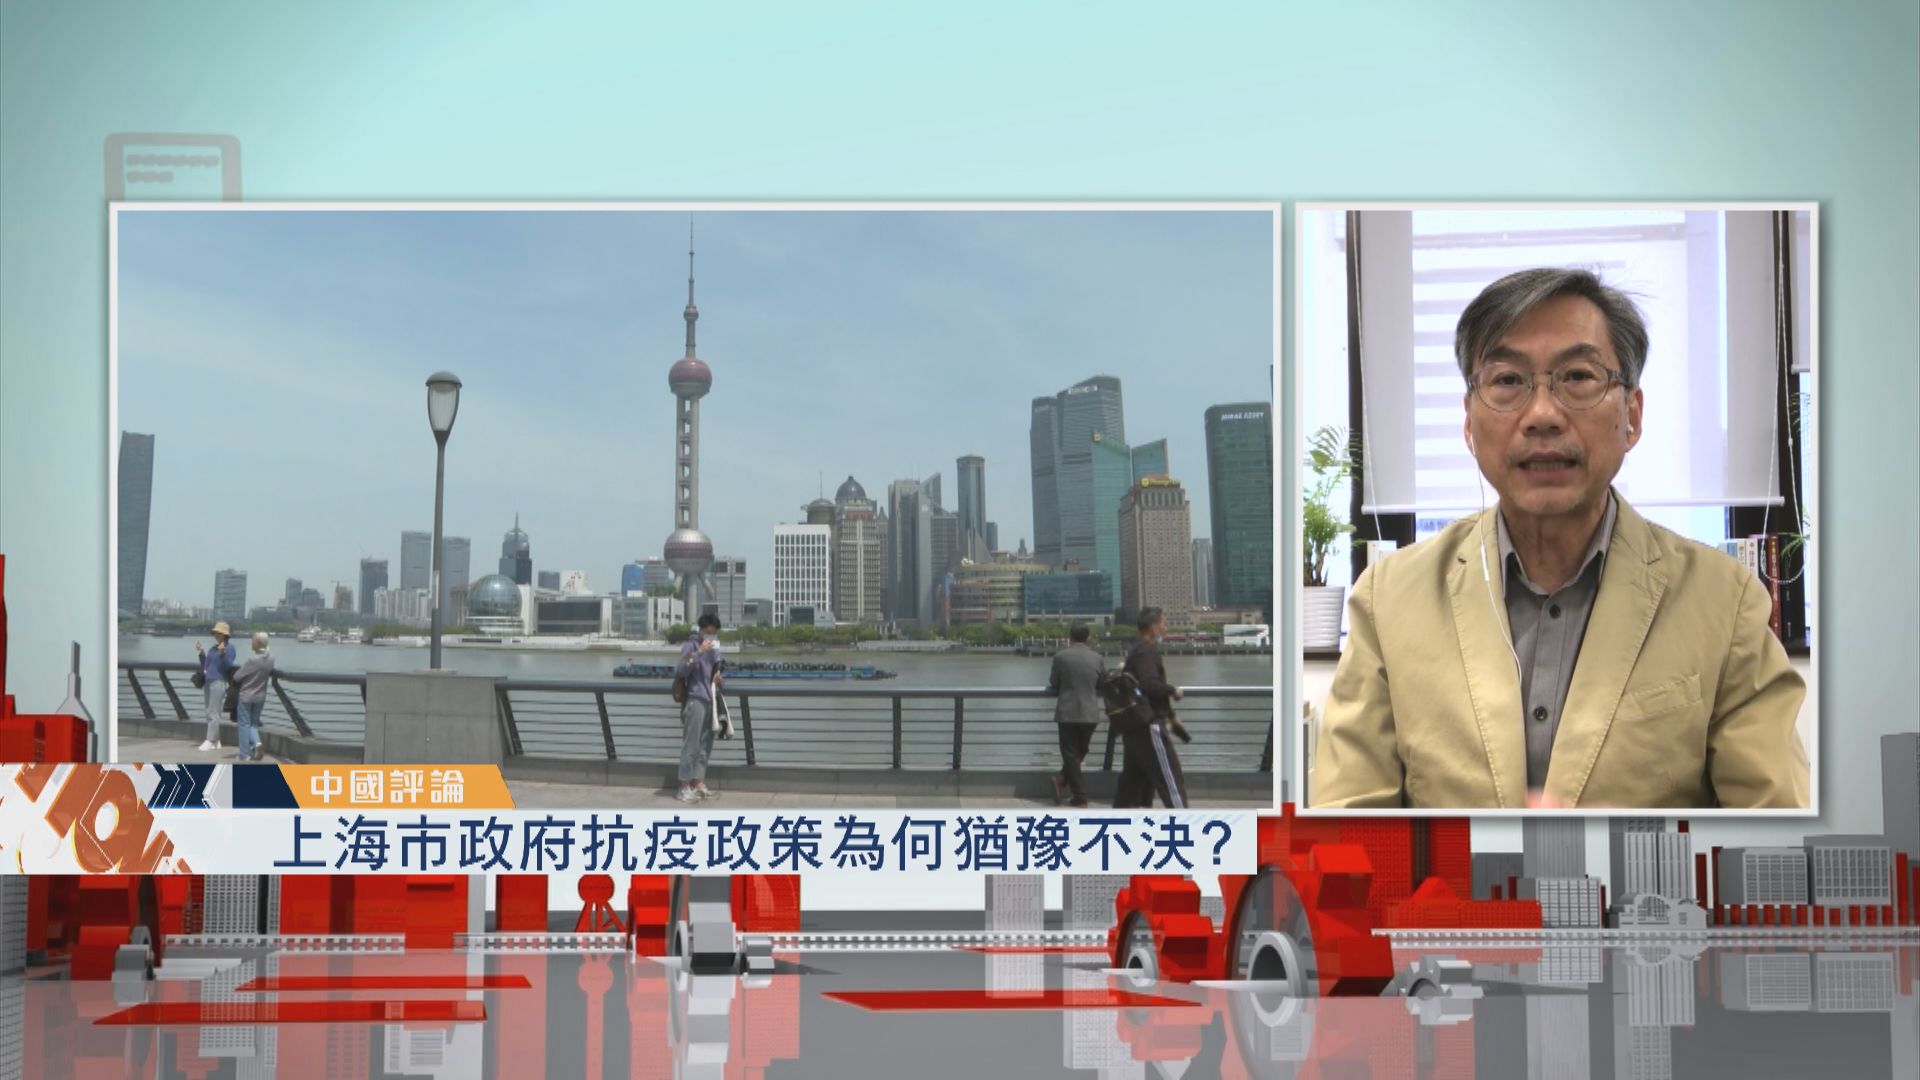 【中國評論】上海市政府抗疫政策為何猶豫不決?